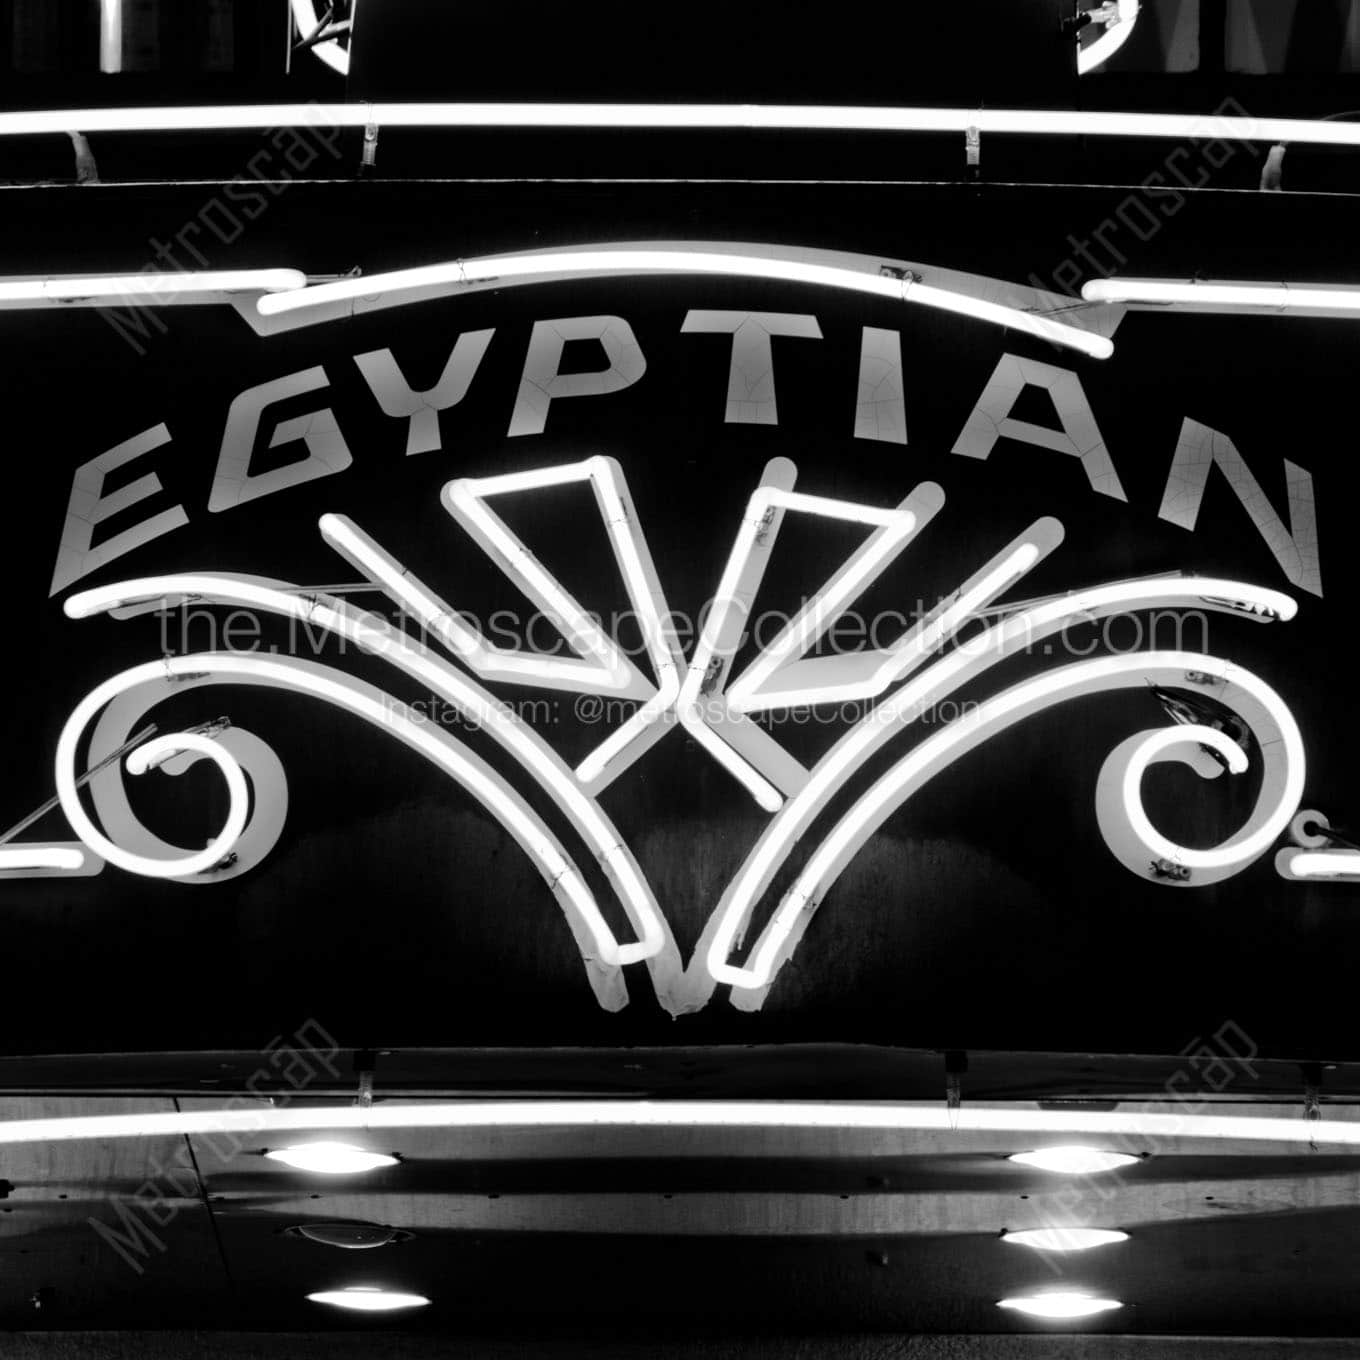 egyptian theater Black & White Office Art